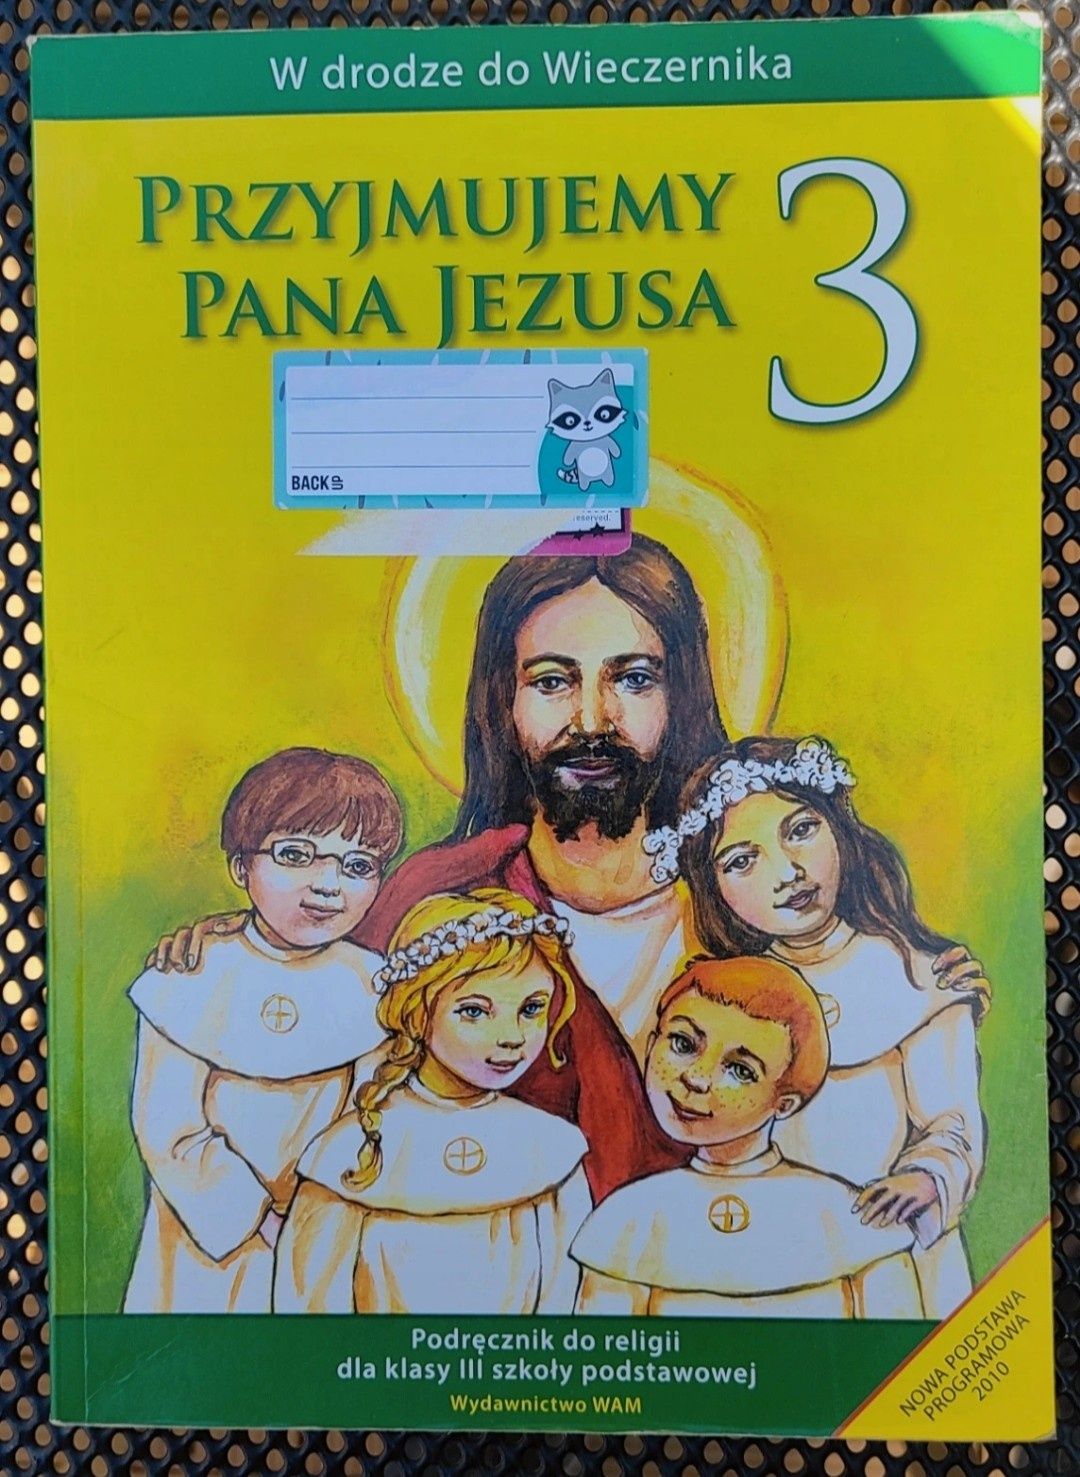 Podręcznik Przyjmujemy Pana Jezusa 3